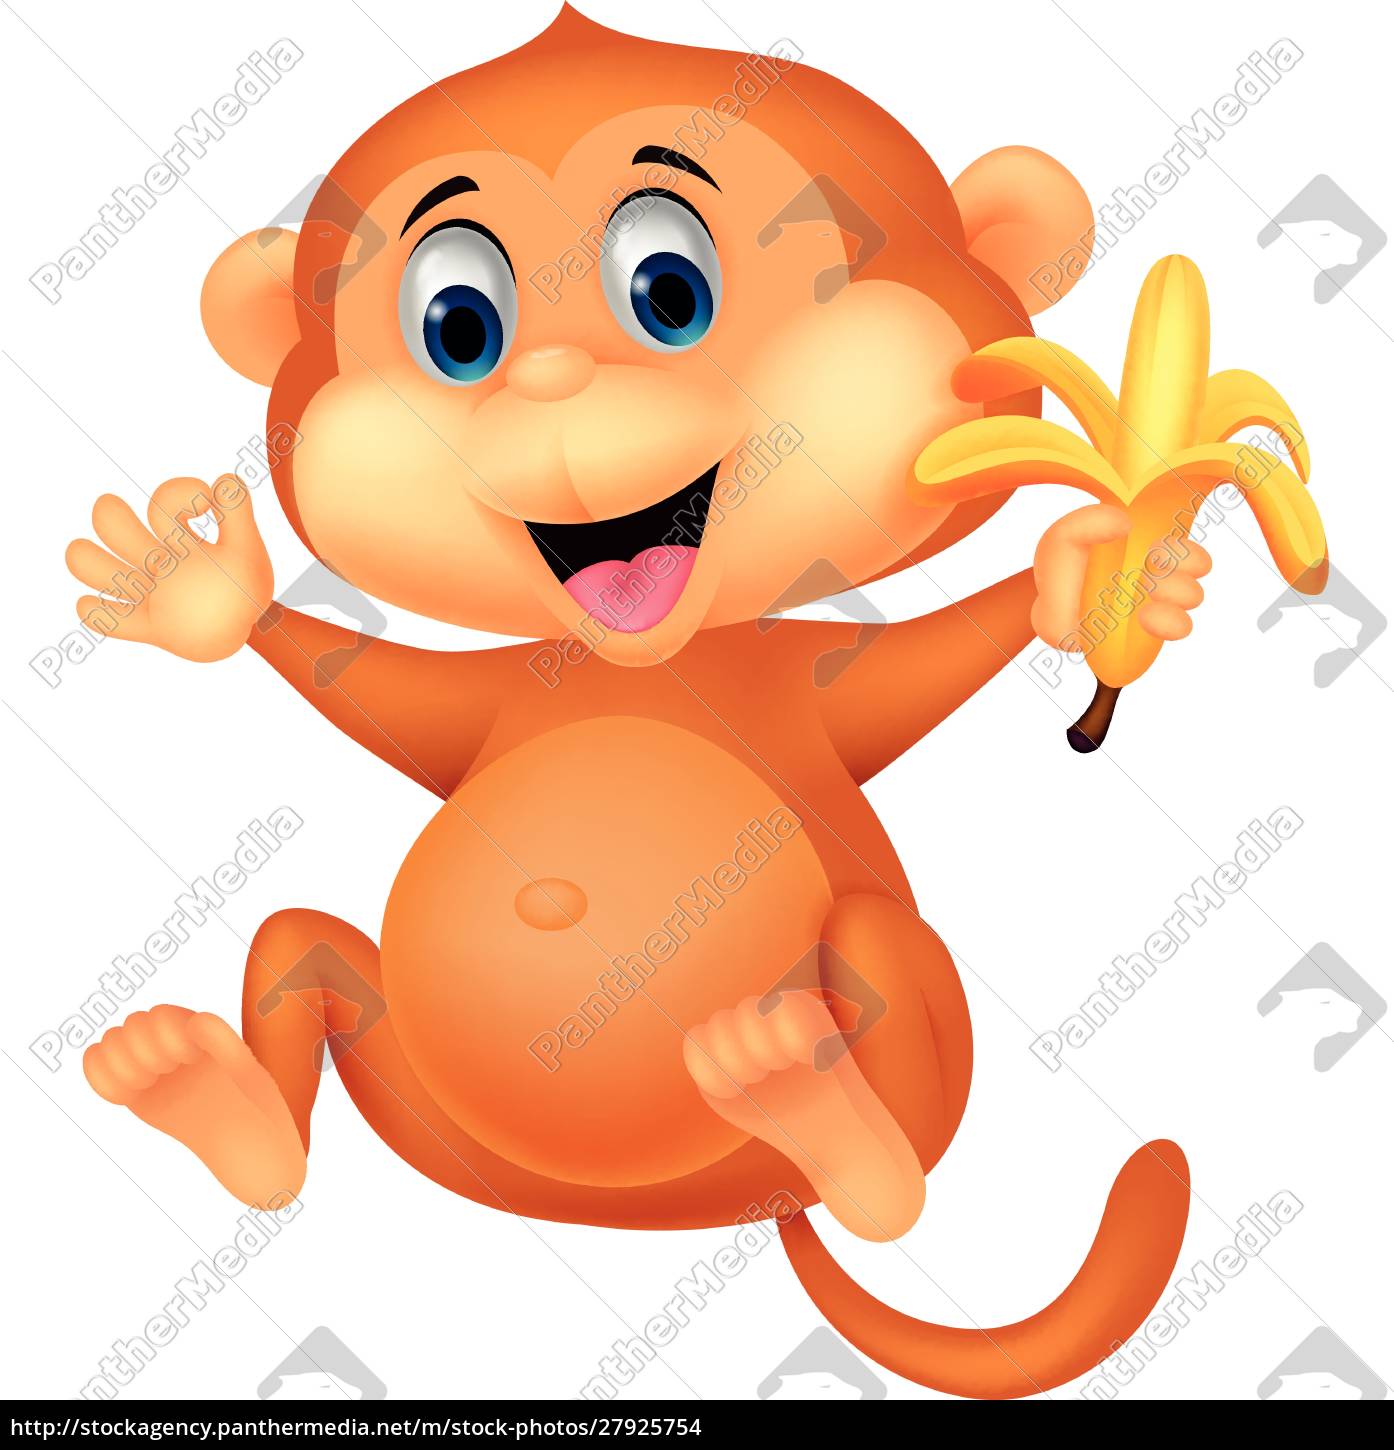 Macaco de desenho animado adorável sentado em uma ilustração de